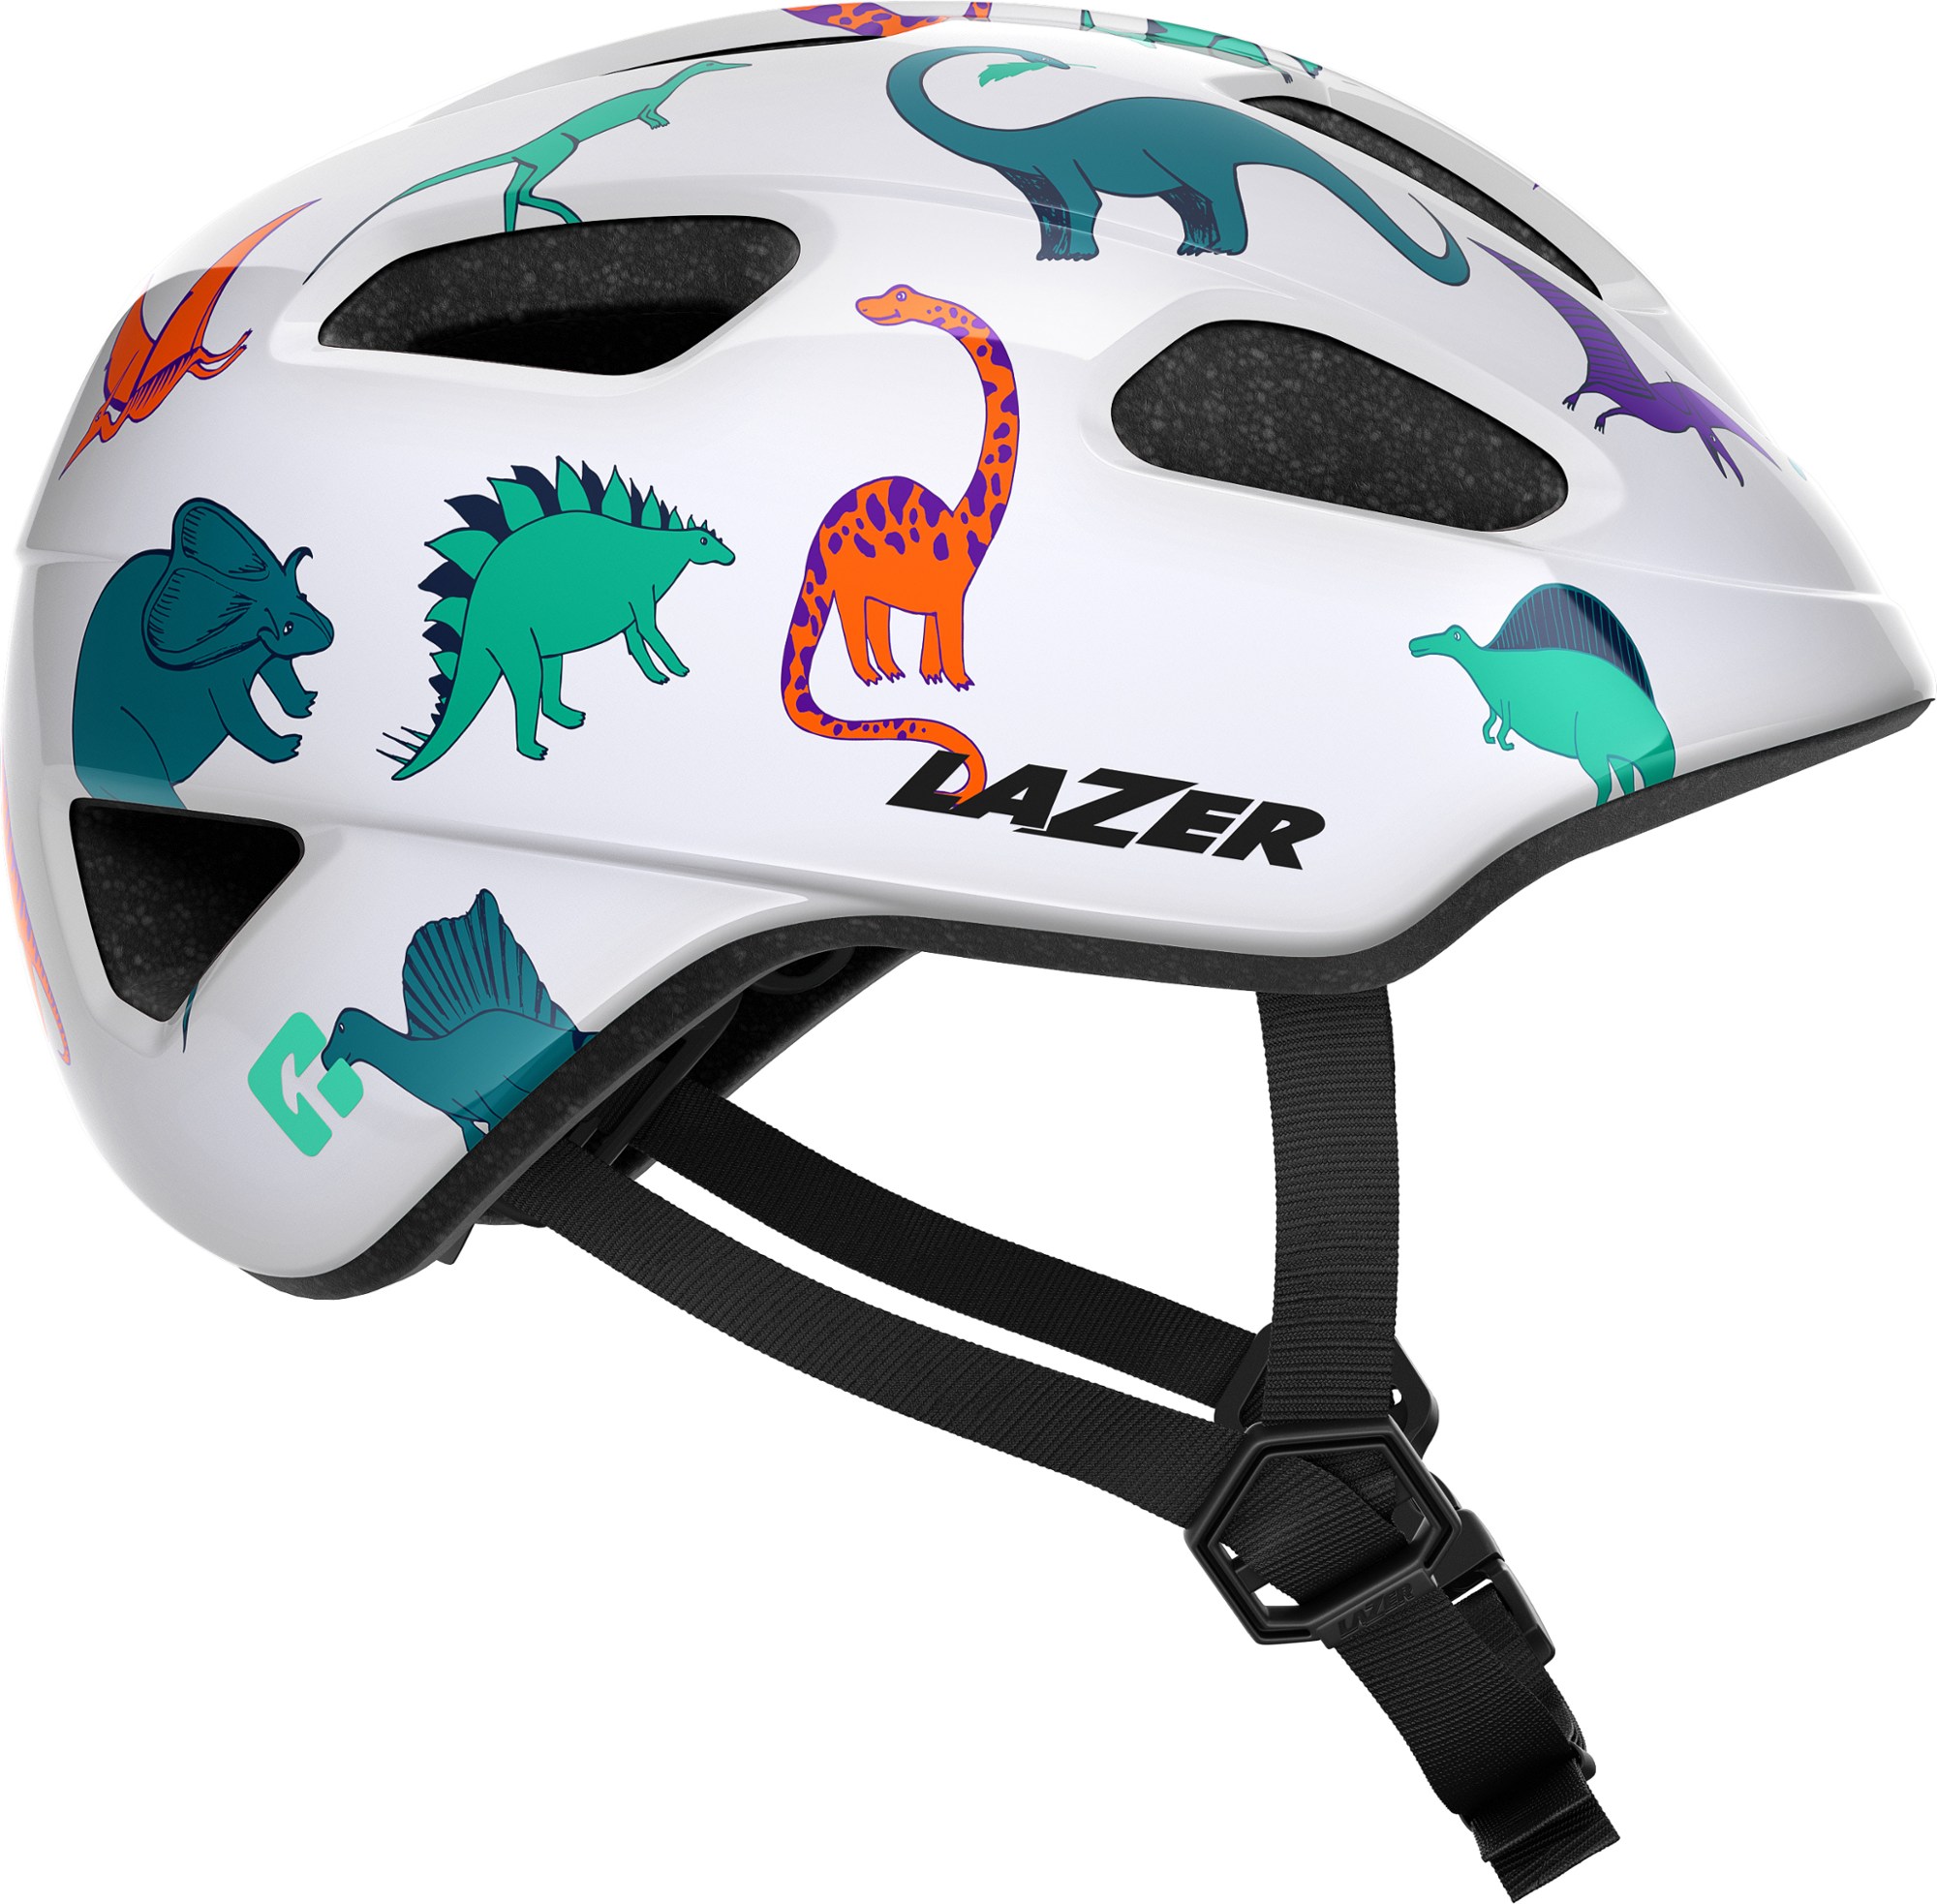 велосипедный шлем nutz kineticore детский lazer синий Велосипедный шлем Pnut KinetiCore — для малышей Lazer, мультиколор